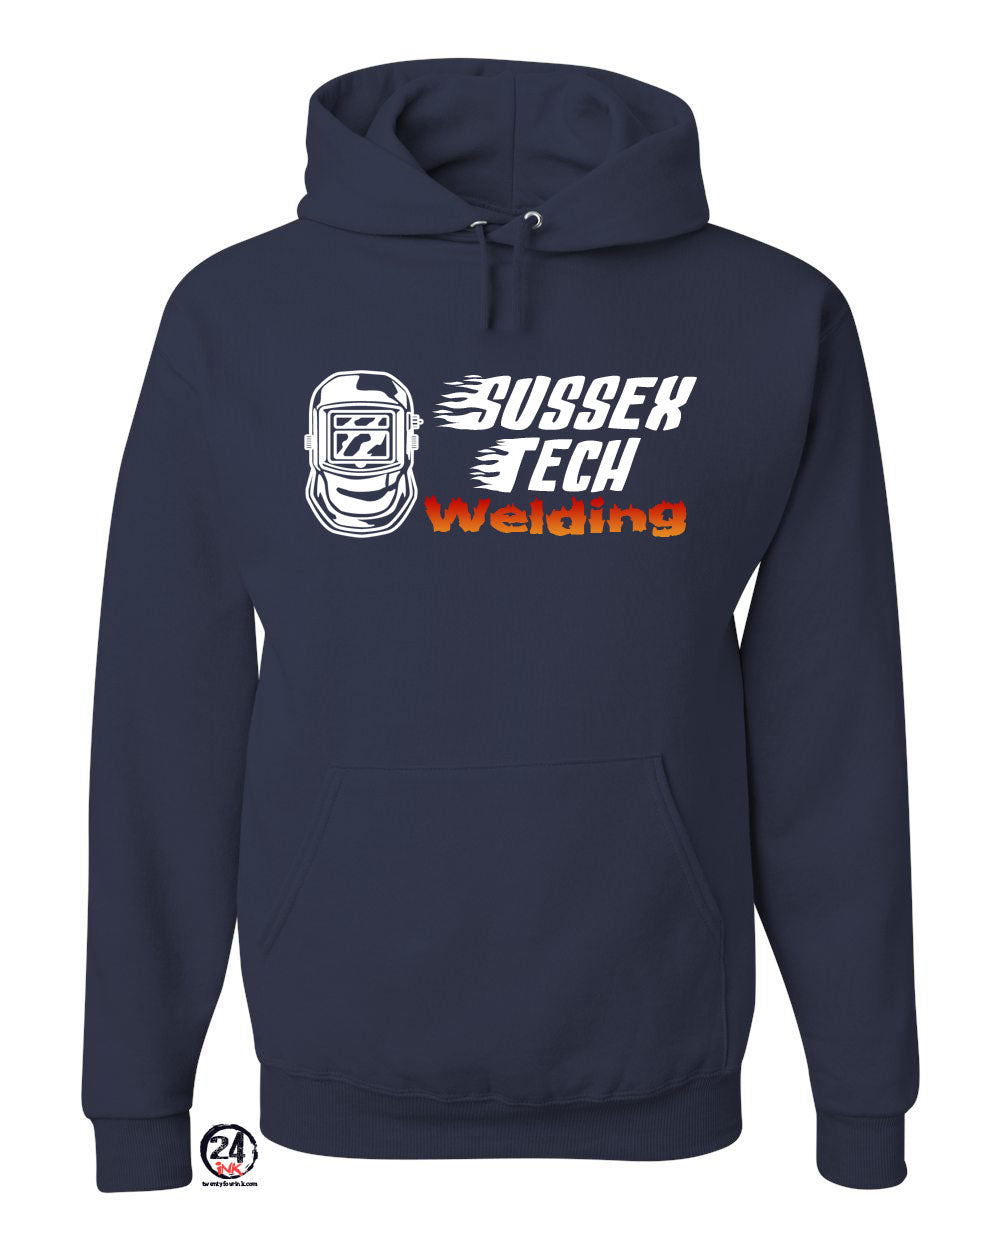 Sussex Tech Welding Design 4 Hooded Sweatshirt